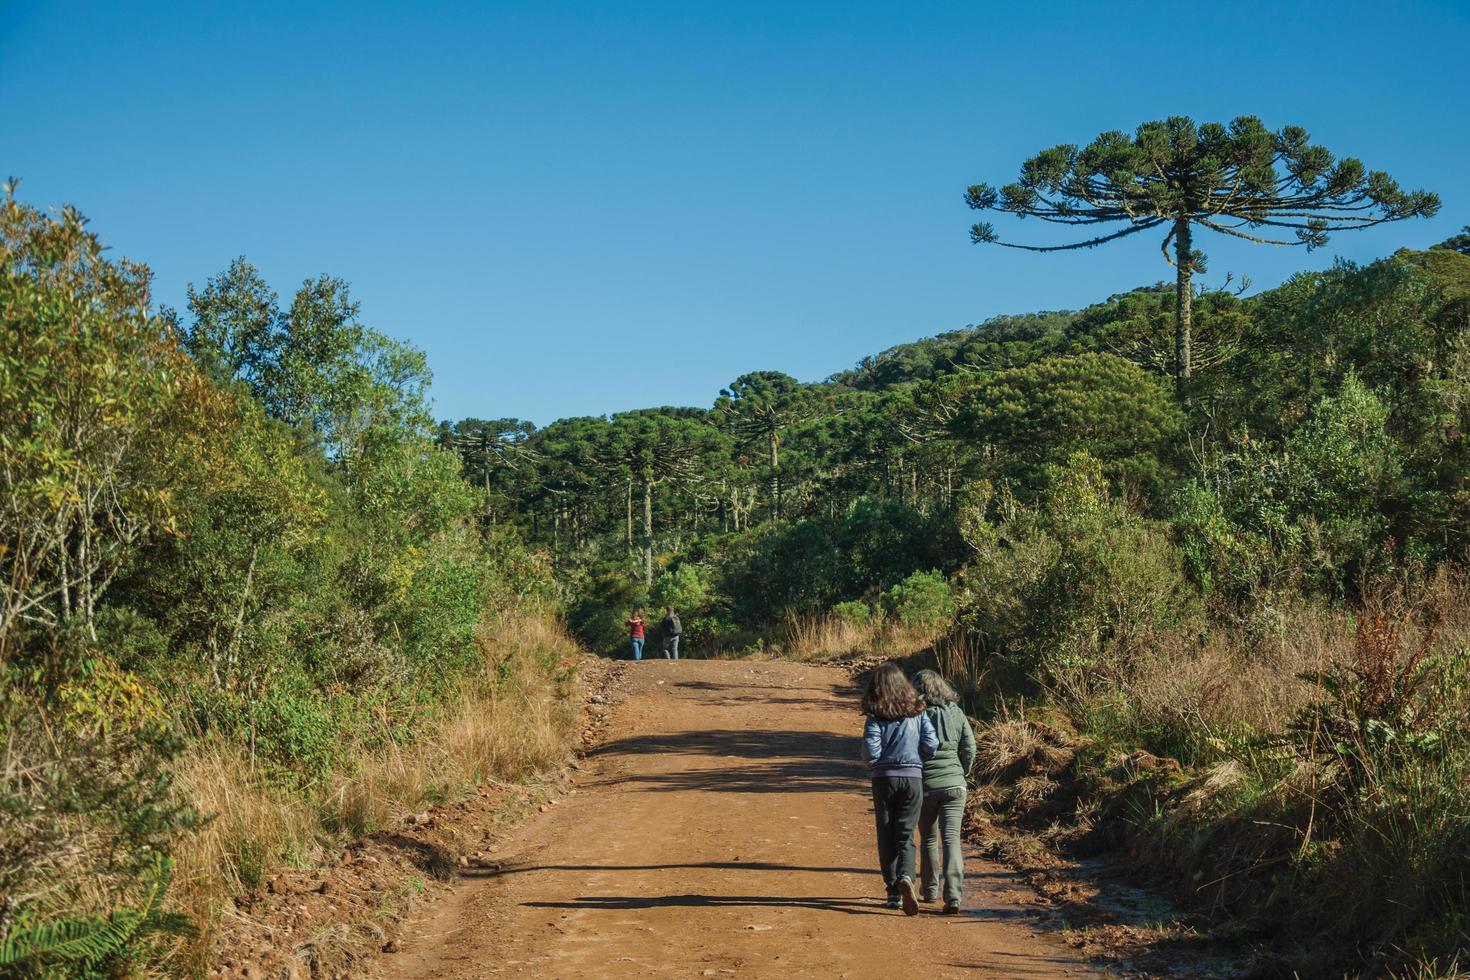 människor som vandrar på grusväg genom skogen med tallar i nationalparken aparados da serra, nära cambara do sul. en liten lantstad i södra Brasilien med fantastiska naturliga turistattraktioner. foto